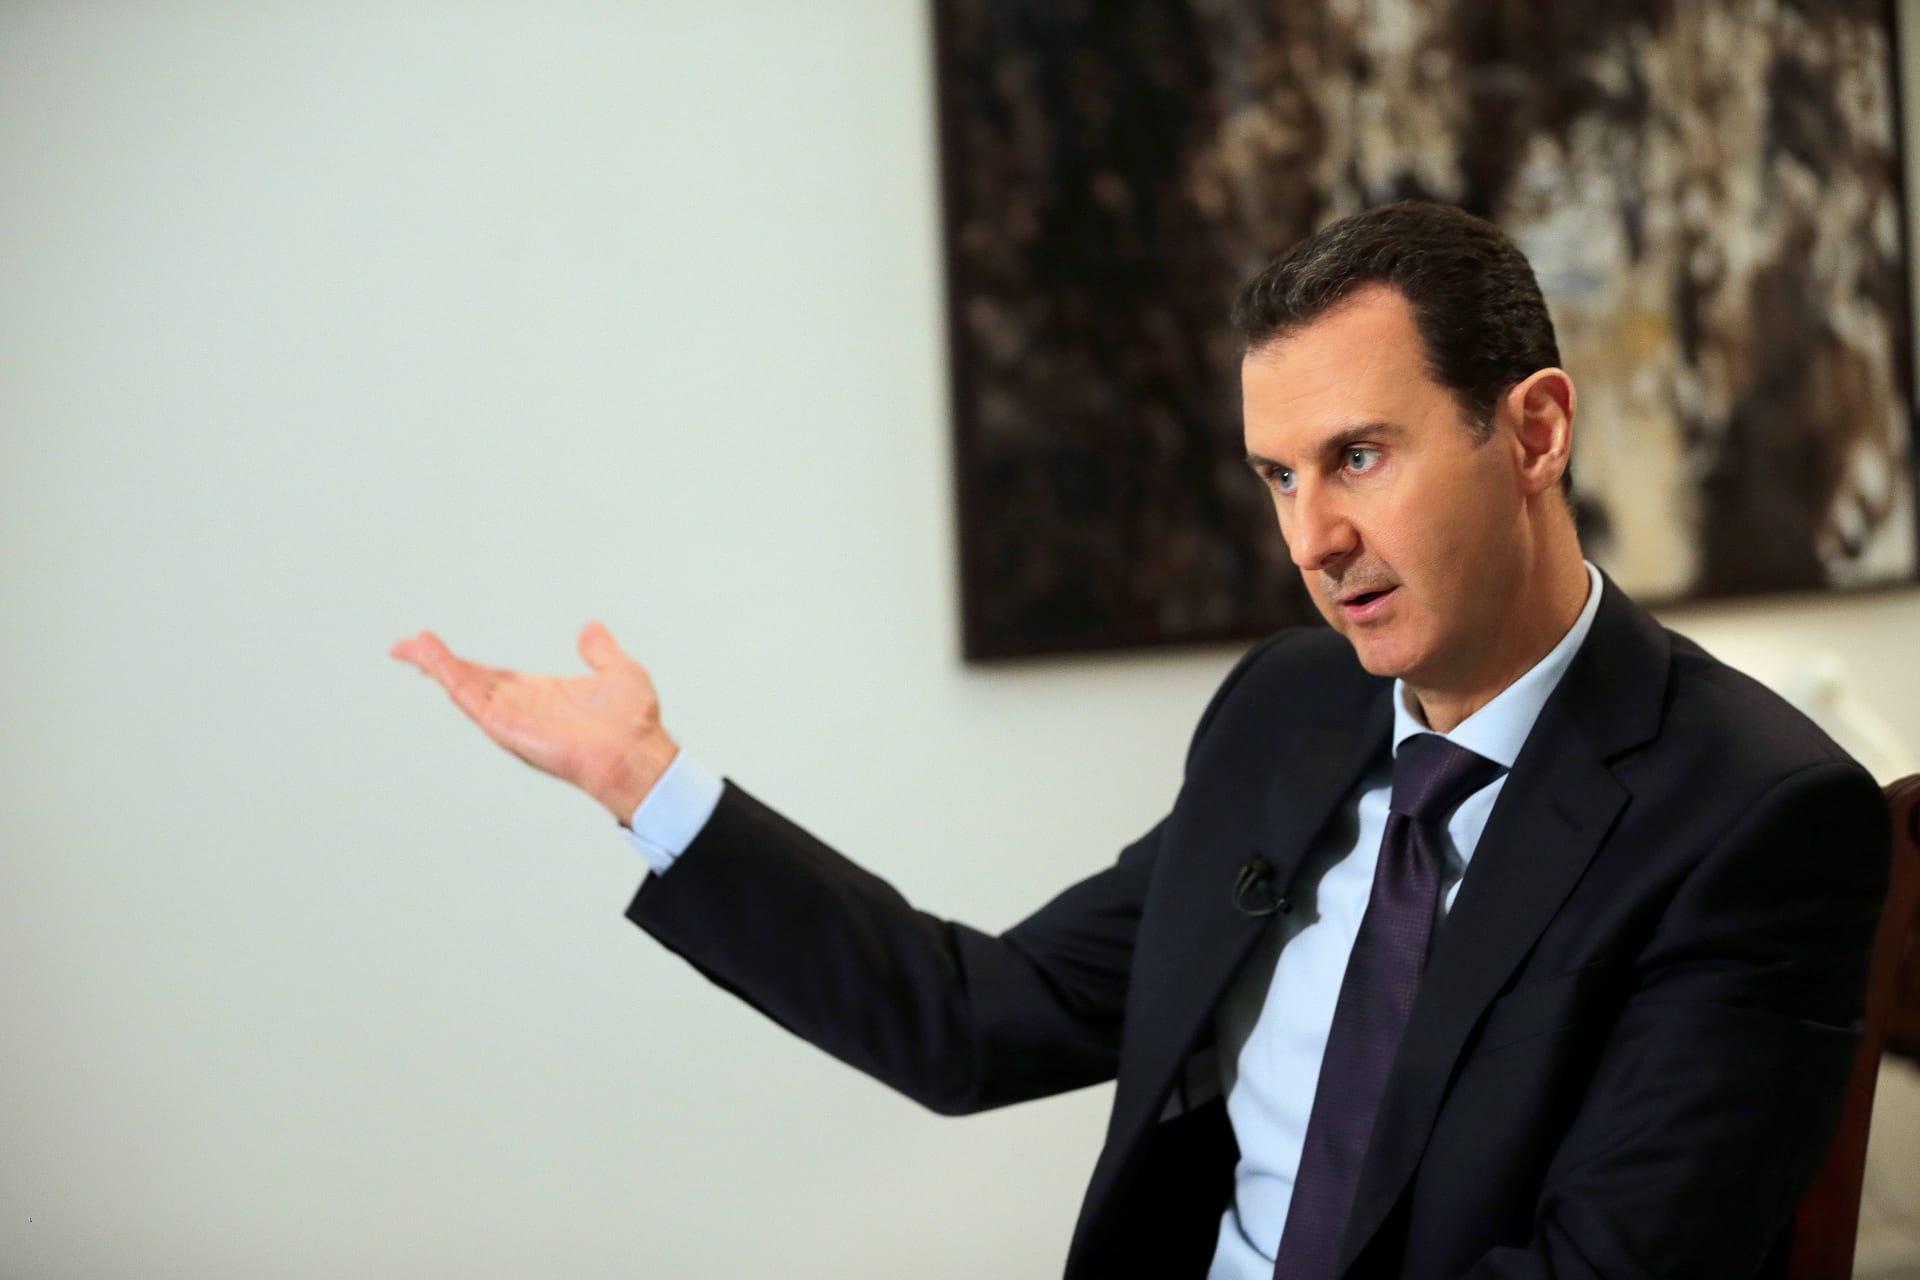 الأسد: الحوار مع ترامب مضيعة للوقت.. ورؤساء أمريكا "رهائن" 